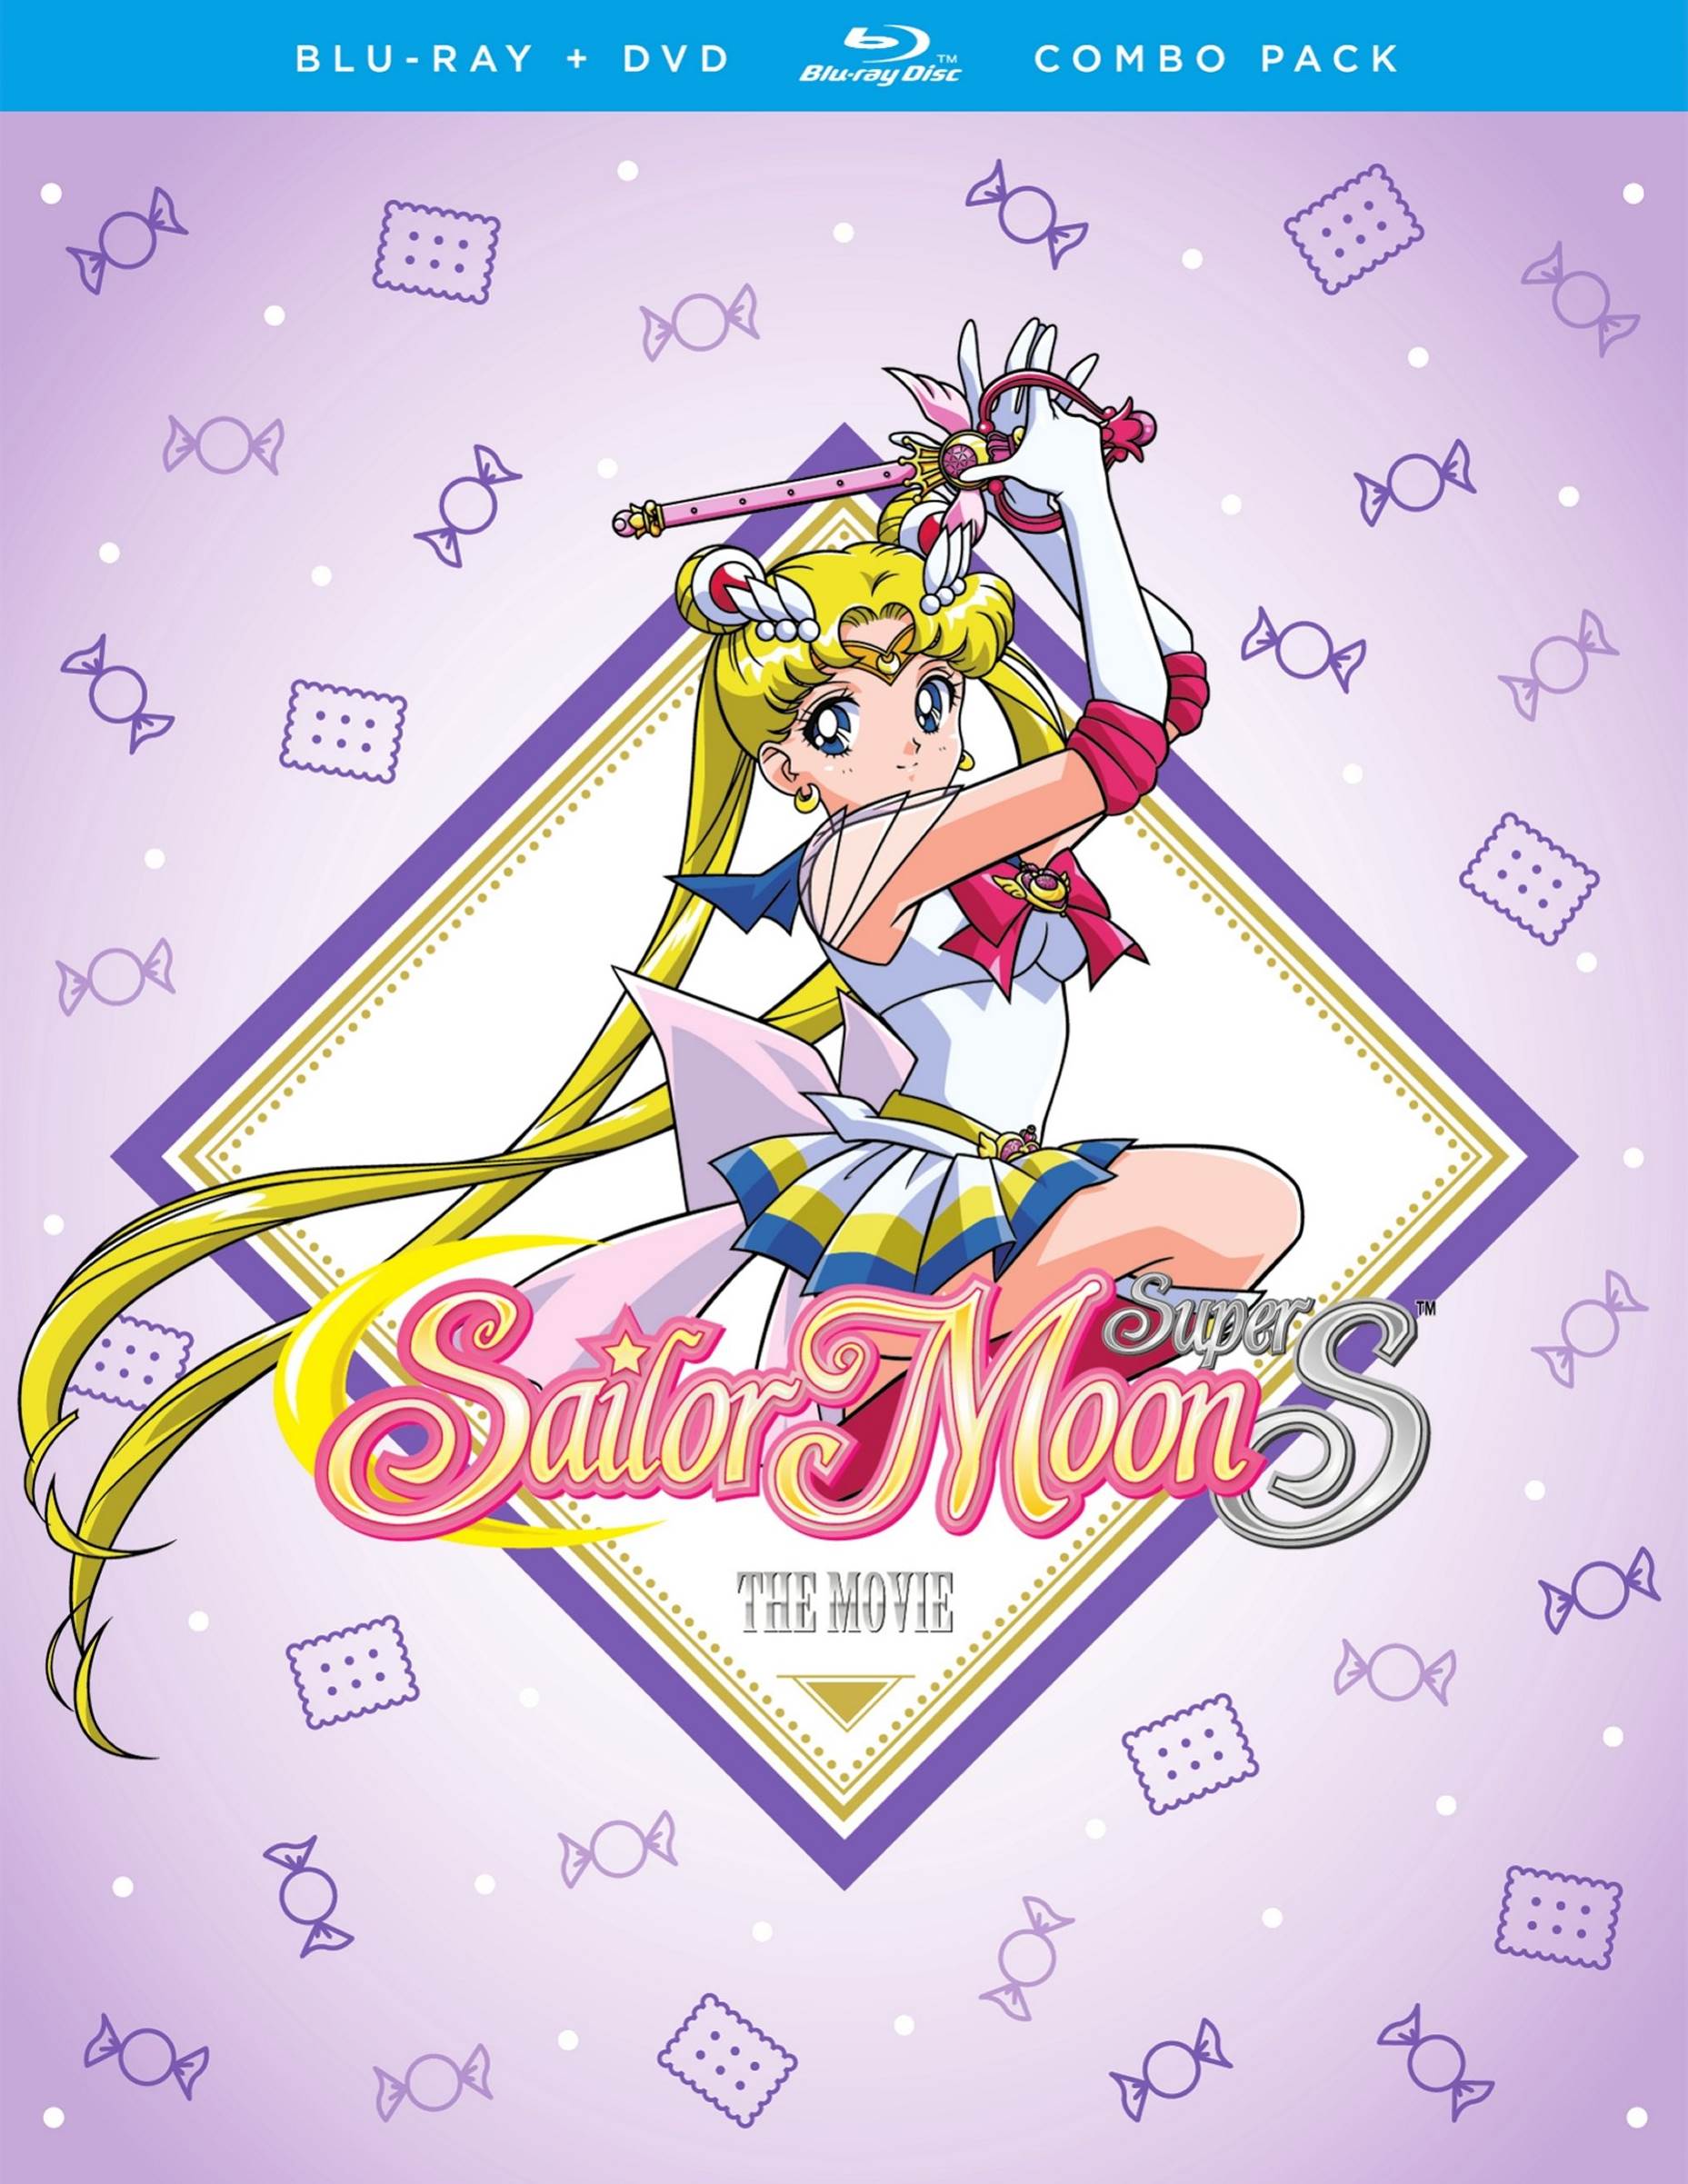 Sailor Moon S: Season 3 Part 1 (DVD)